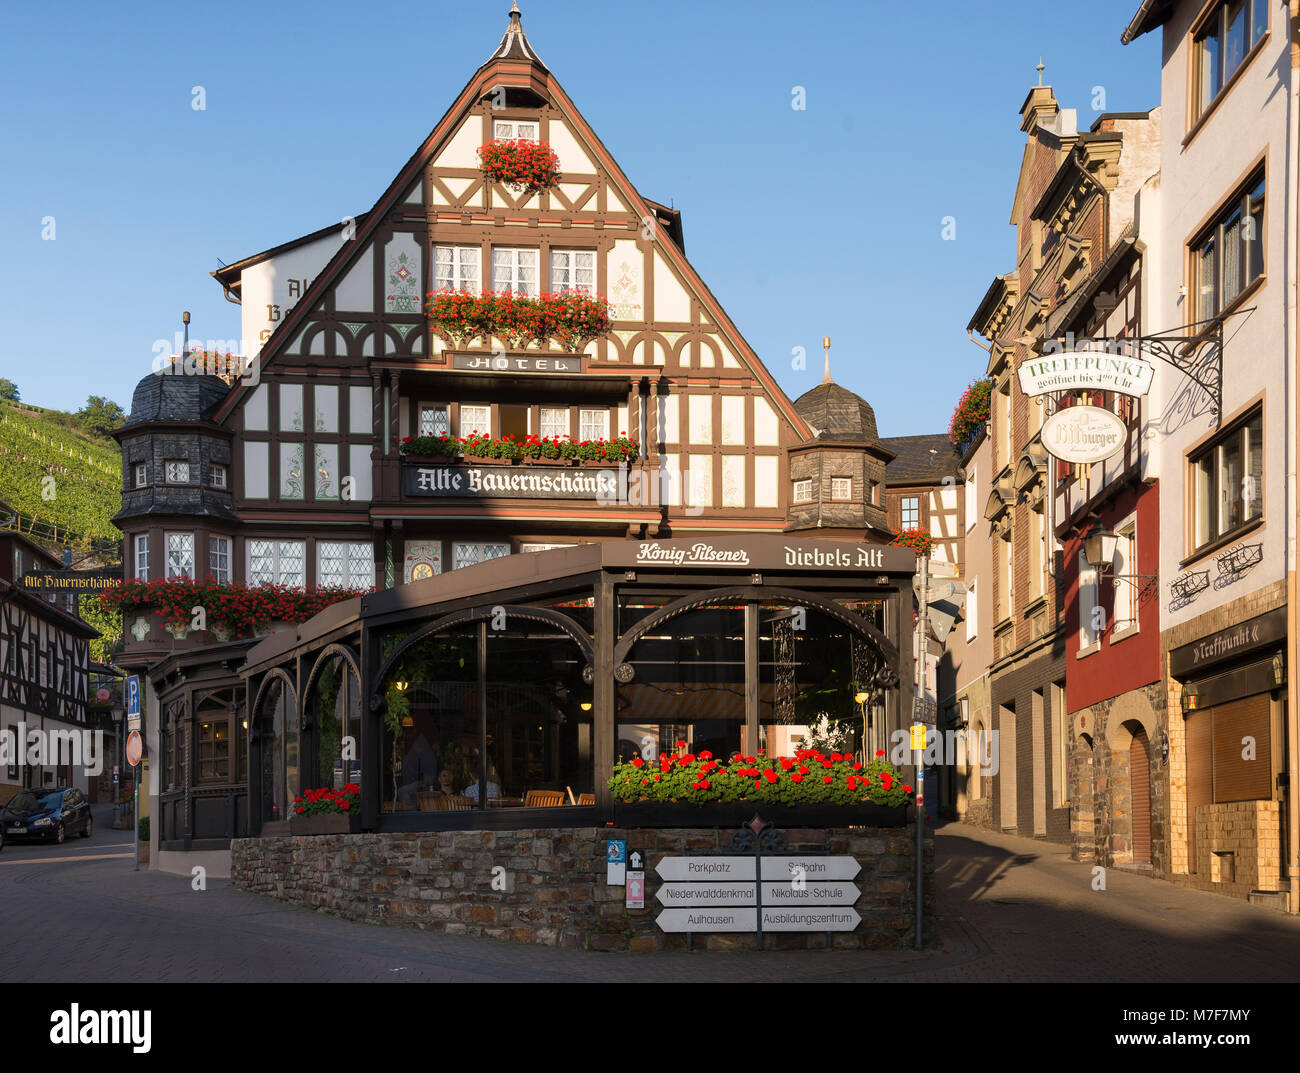 Alte Bauernschänke, Assmannshausen, Rheingau, Hessen, Deutschland Stock Photo